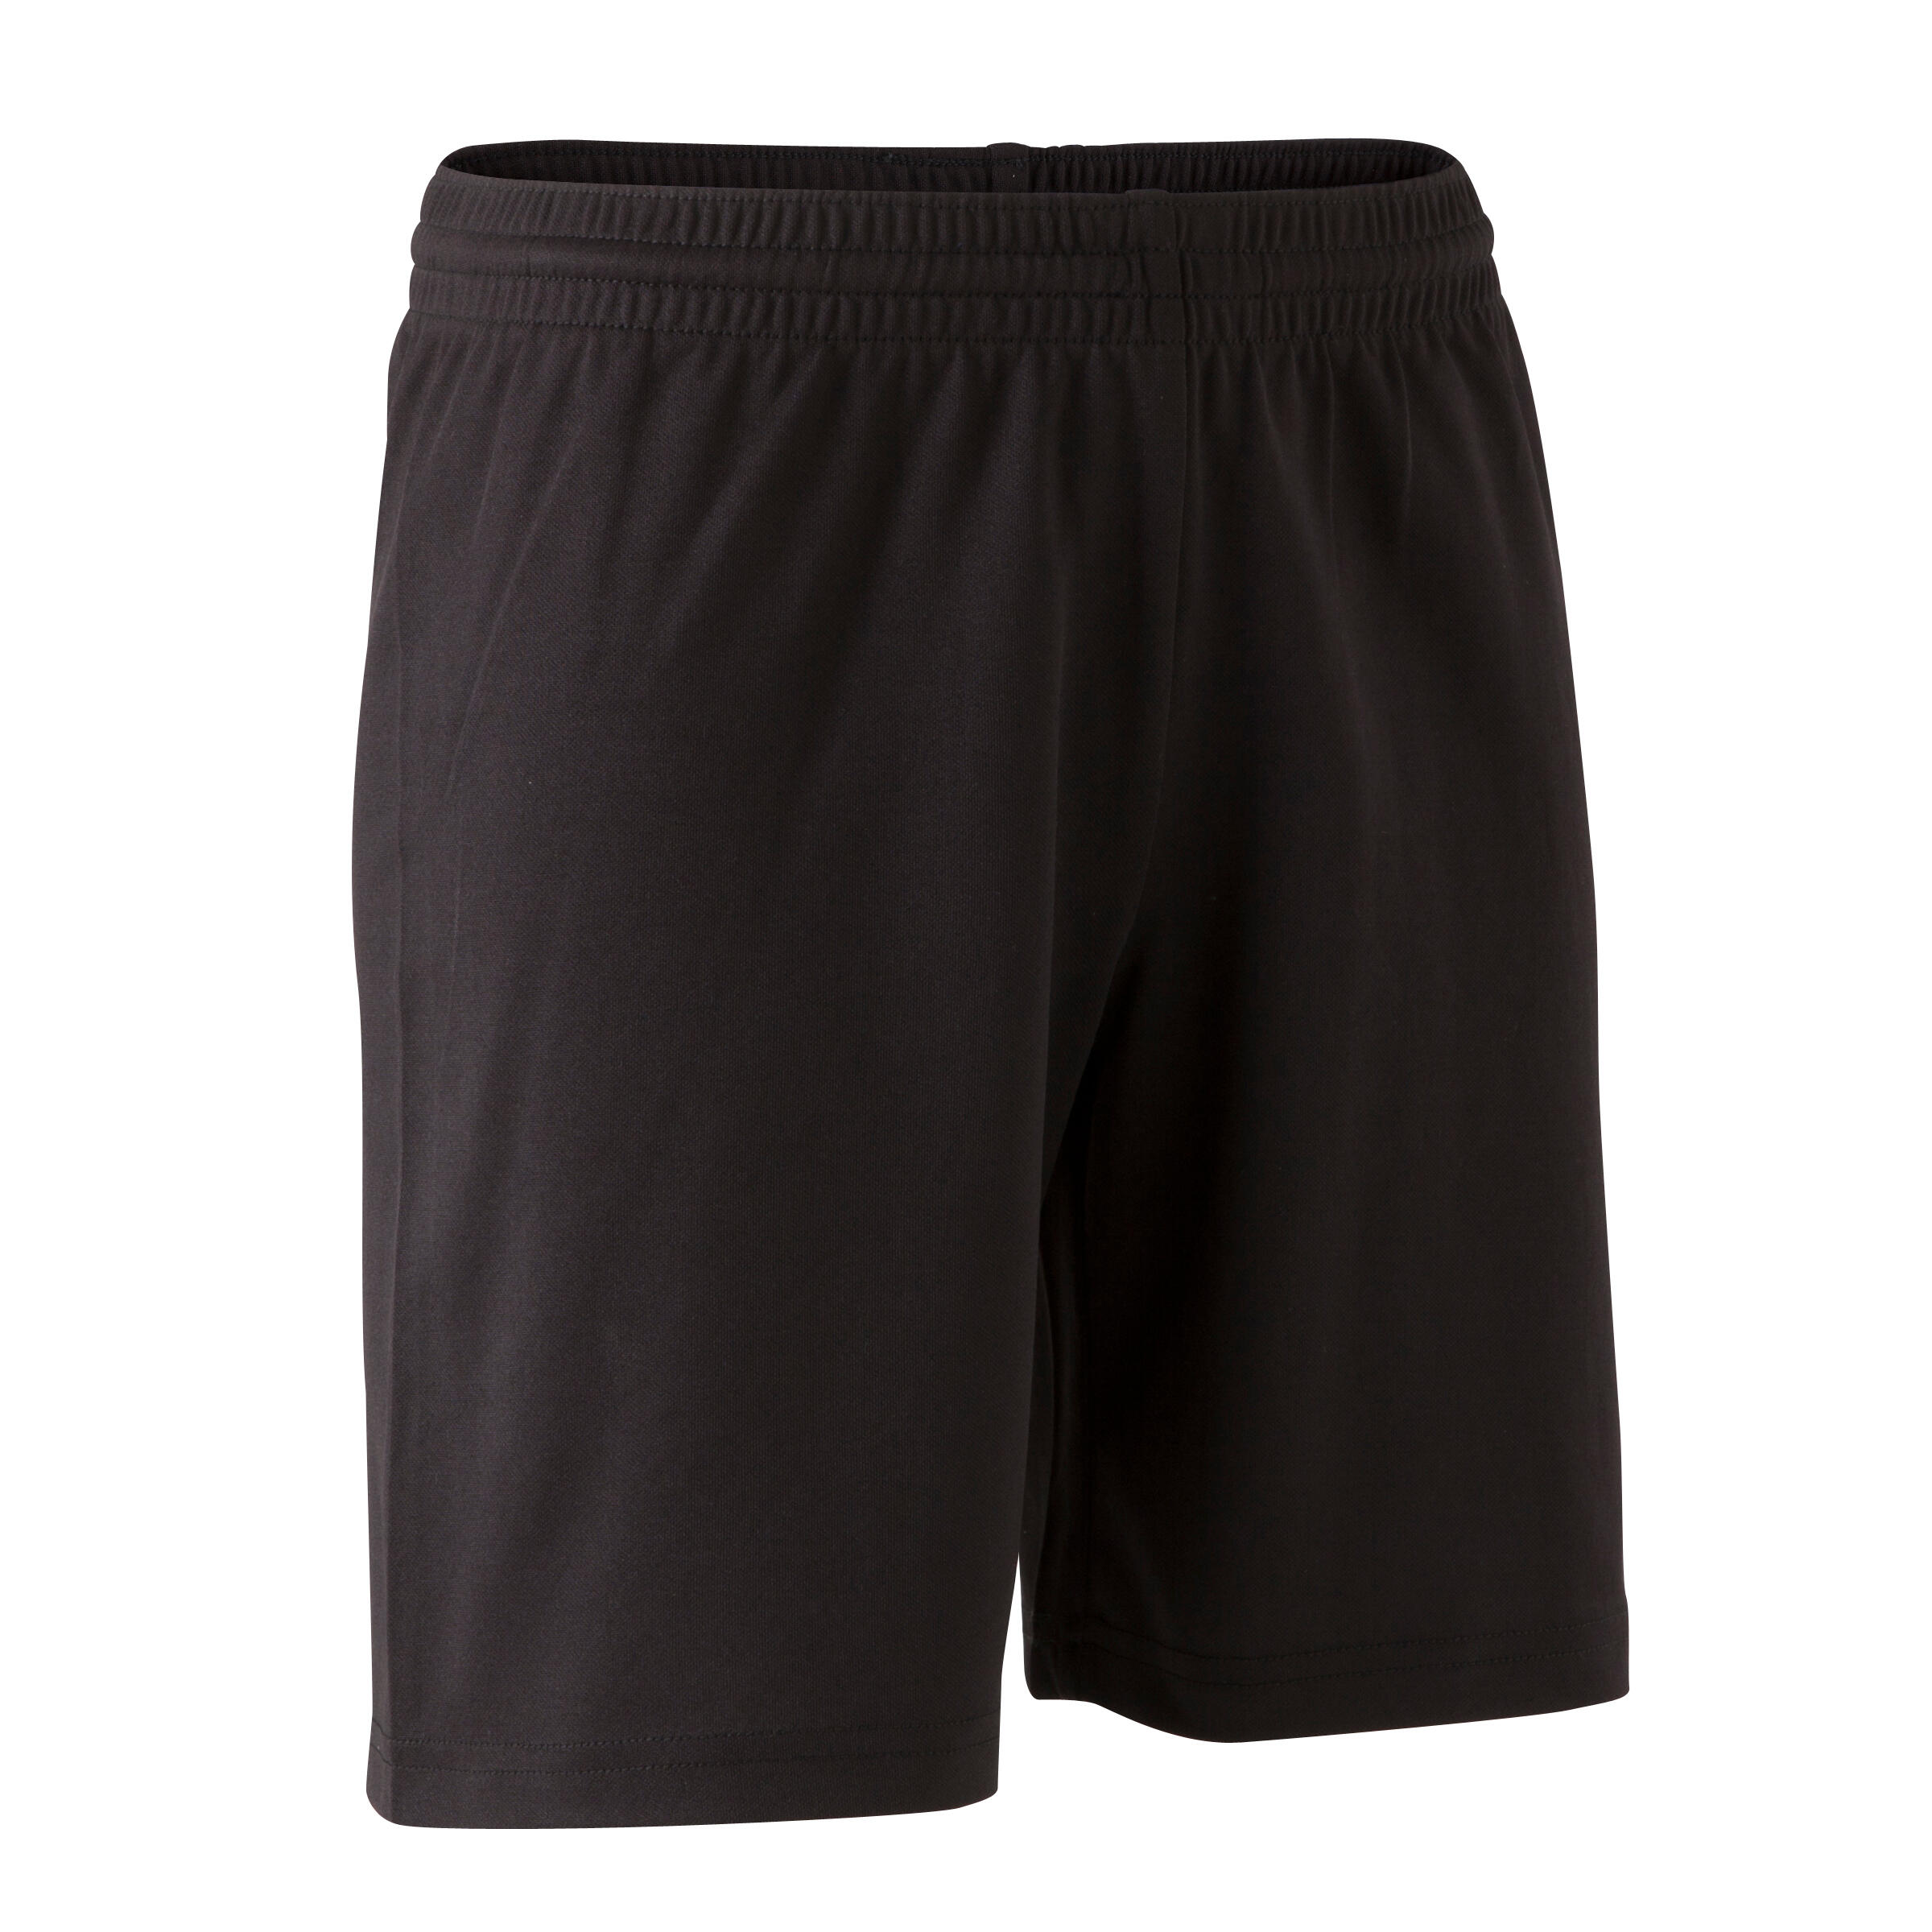 Adult Football Shorts - Football Shorts 